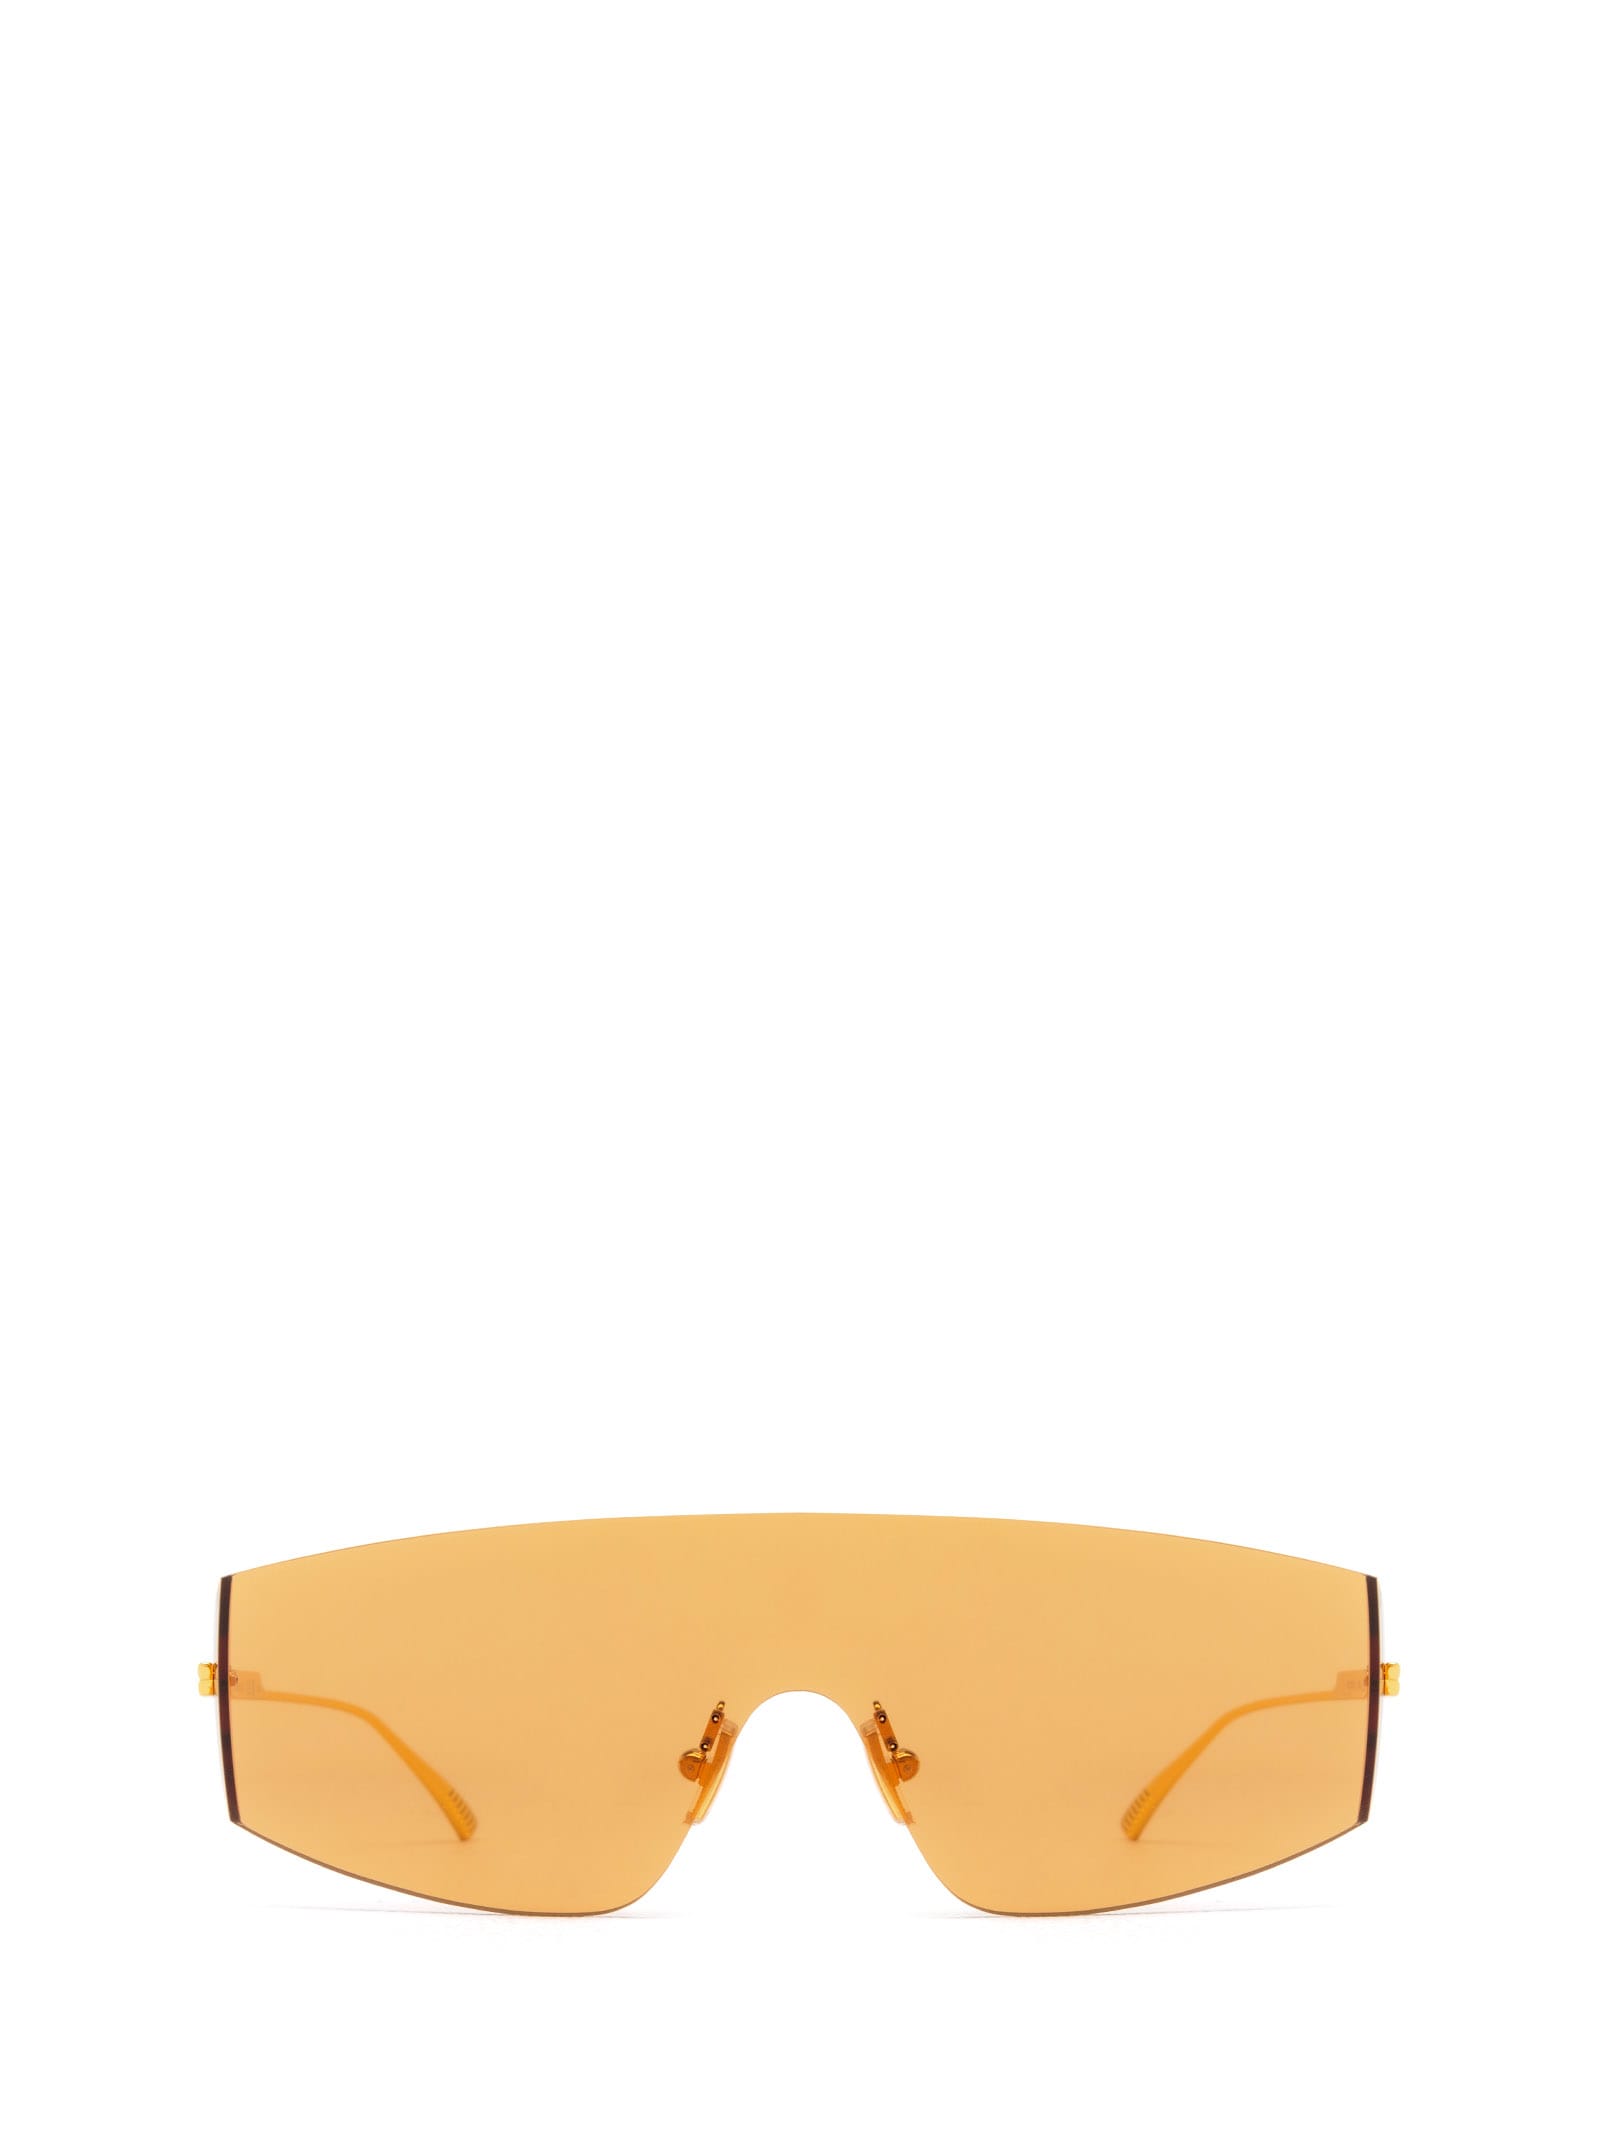 Bv1299s Gold Sunglasses